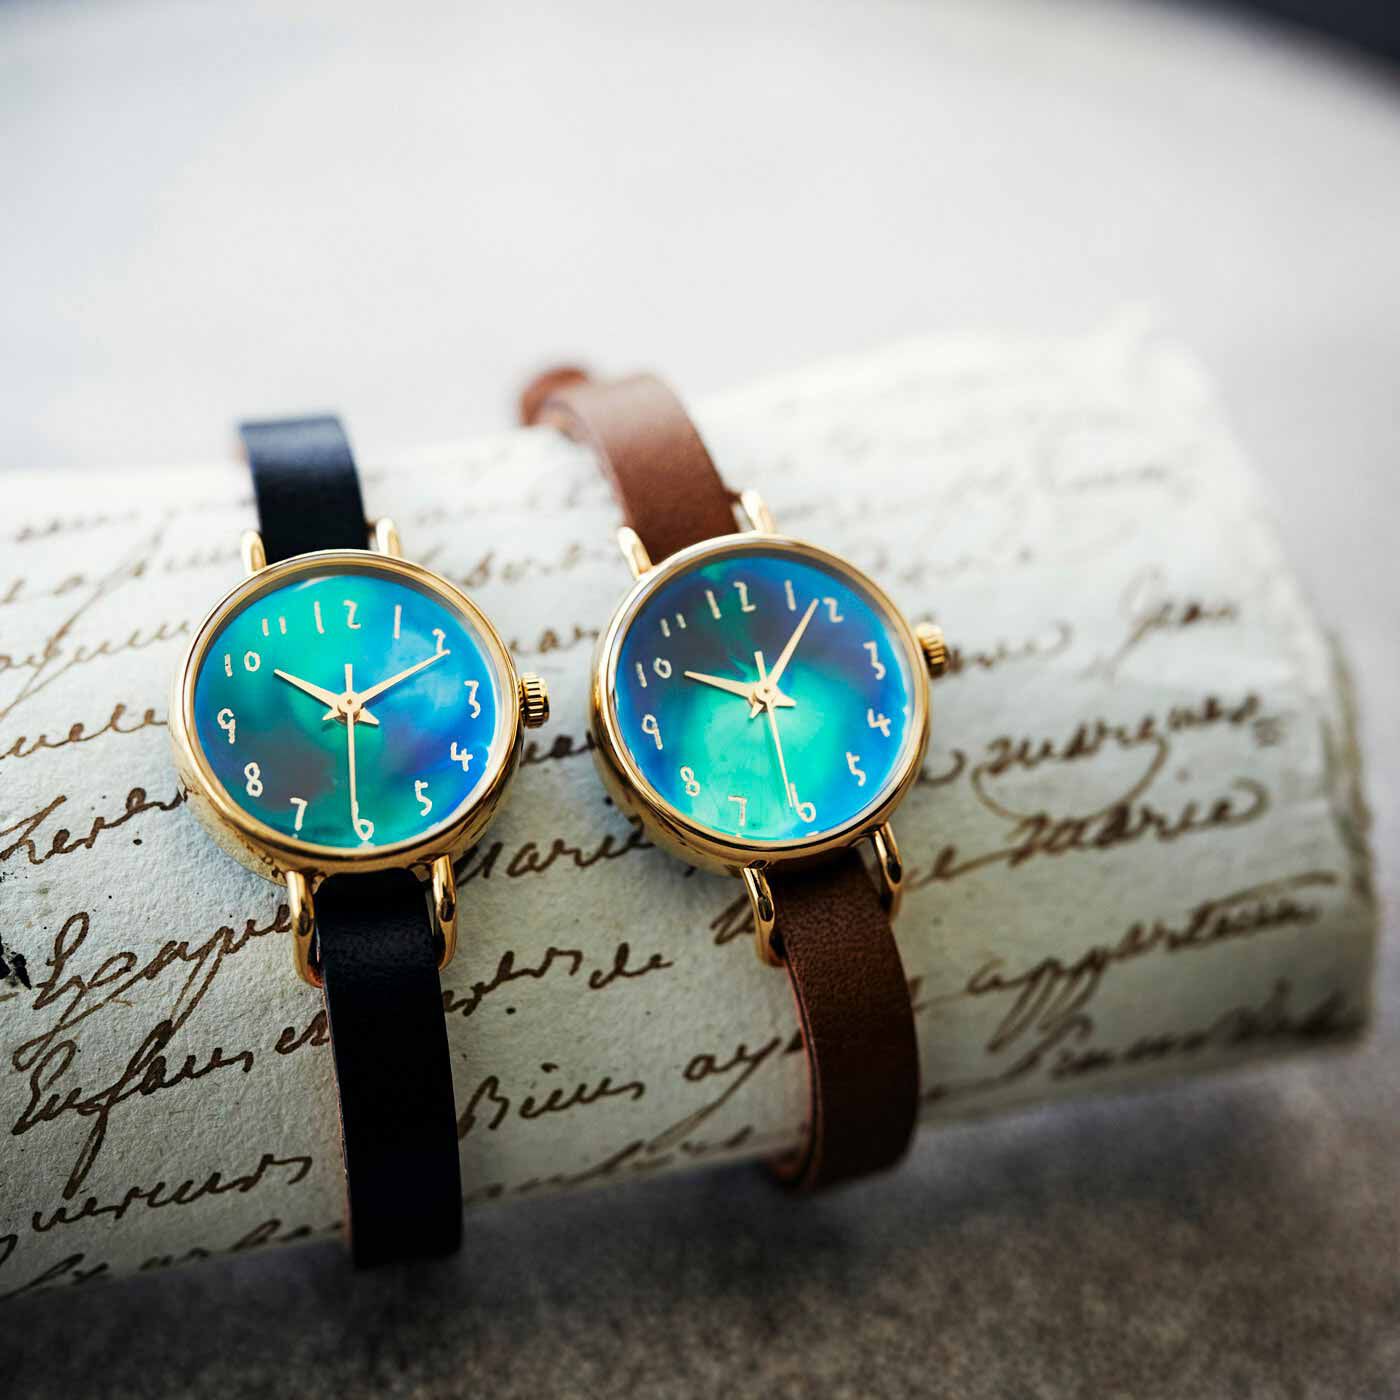 金沢の時計職人が手掛けた 美しいオーロラに見惚れる腕時計〈ブラウン